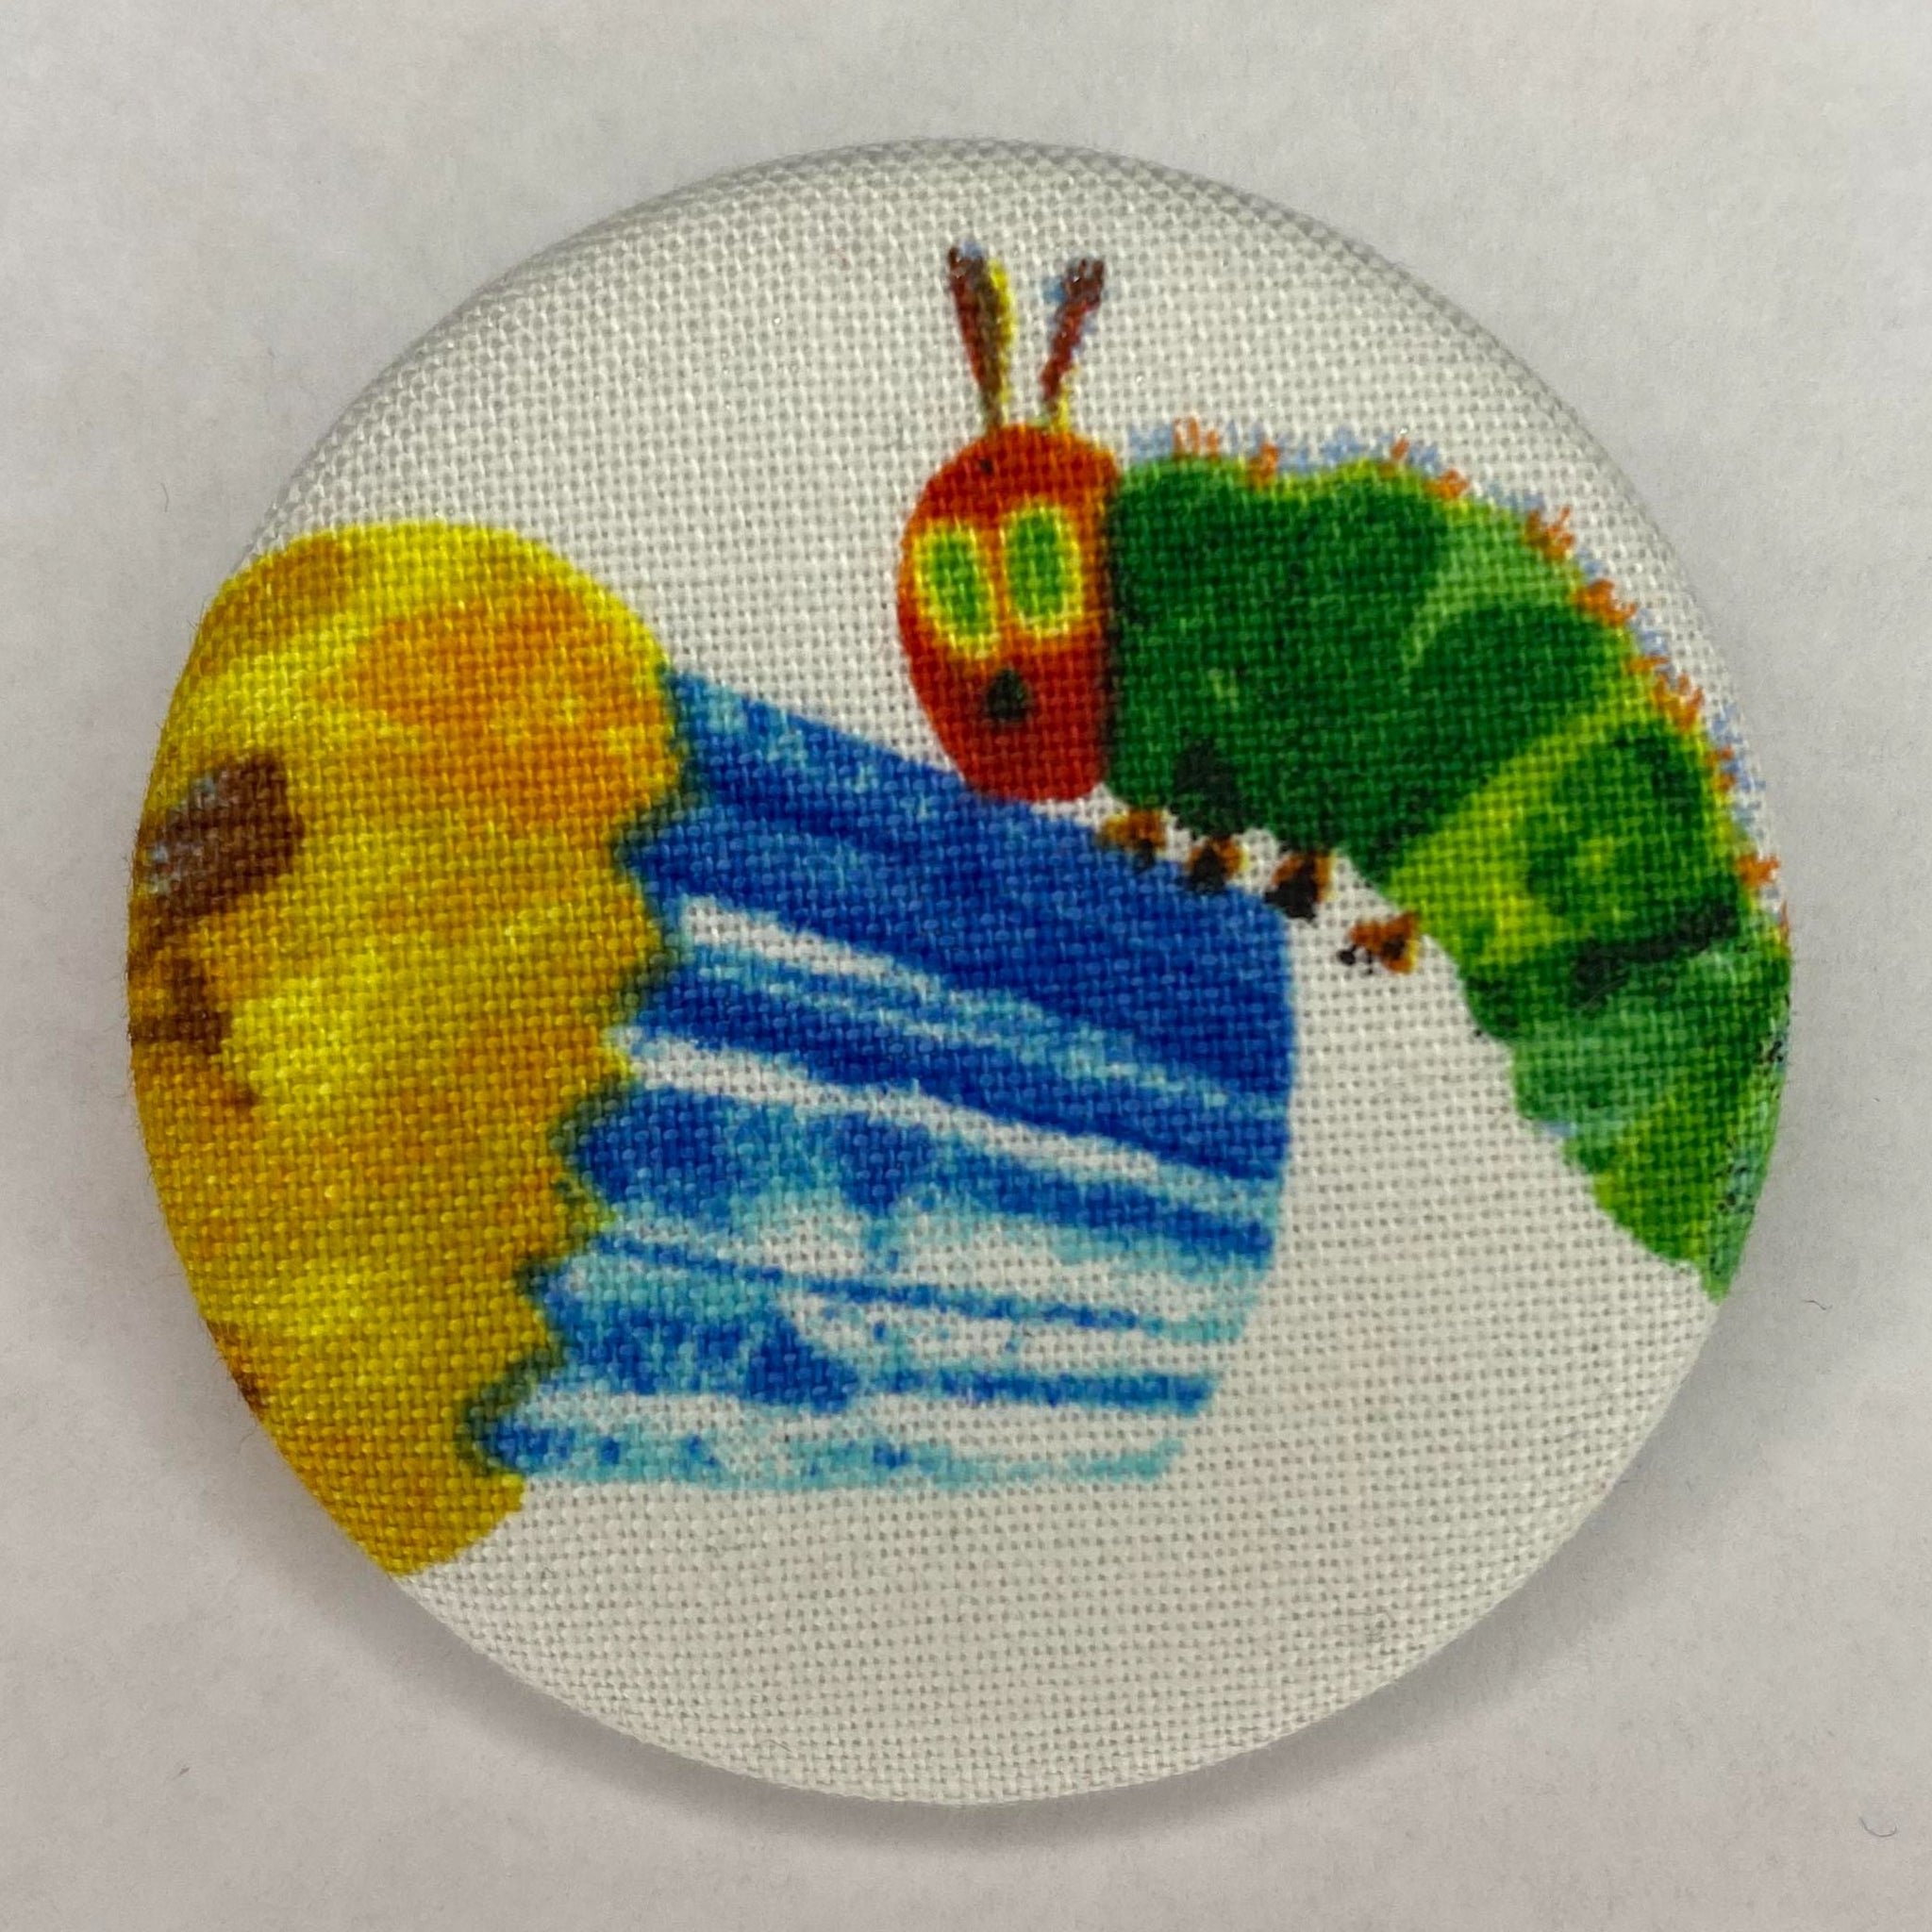 Caterpillar and Cupcake Badge